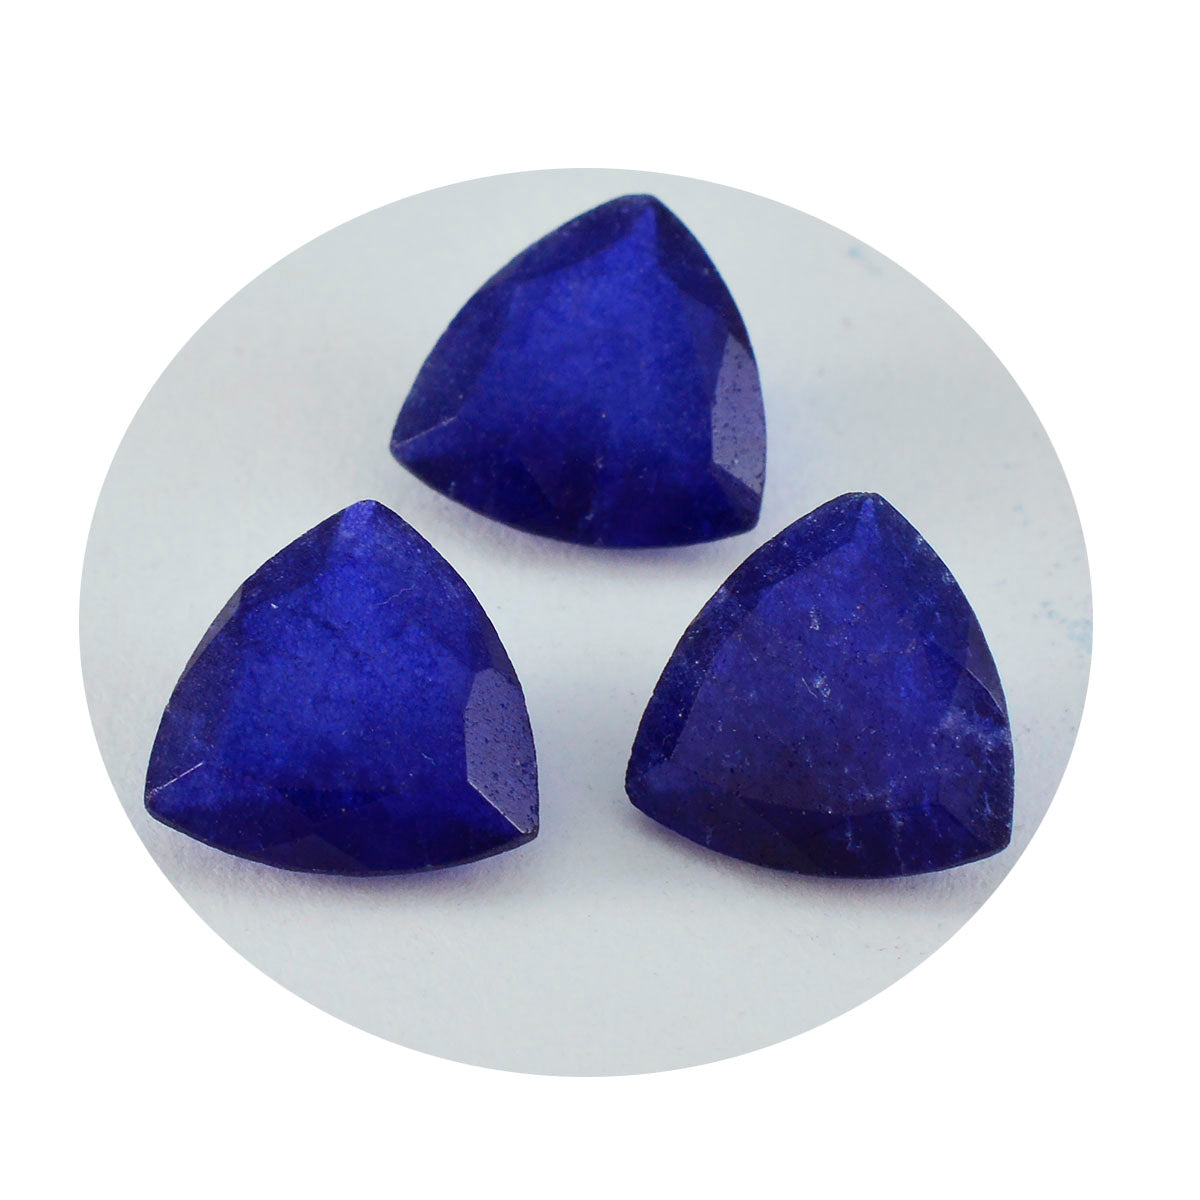 Riyogems 1 pieza de jaspe azul real facetado 13x13 mm forma de trillón piedra preciosa de calidad maravillosa